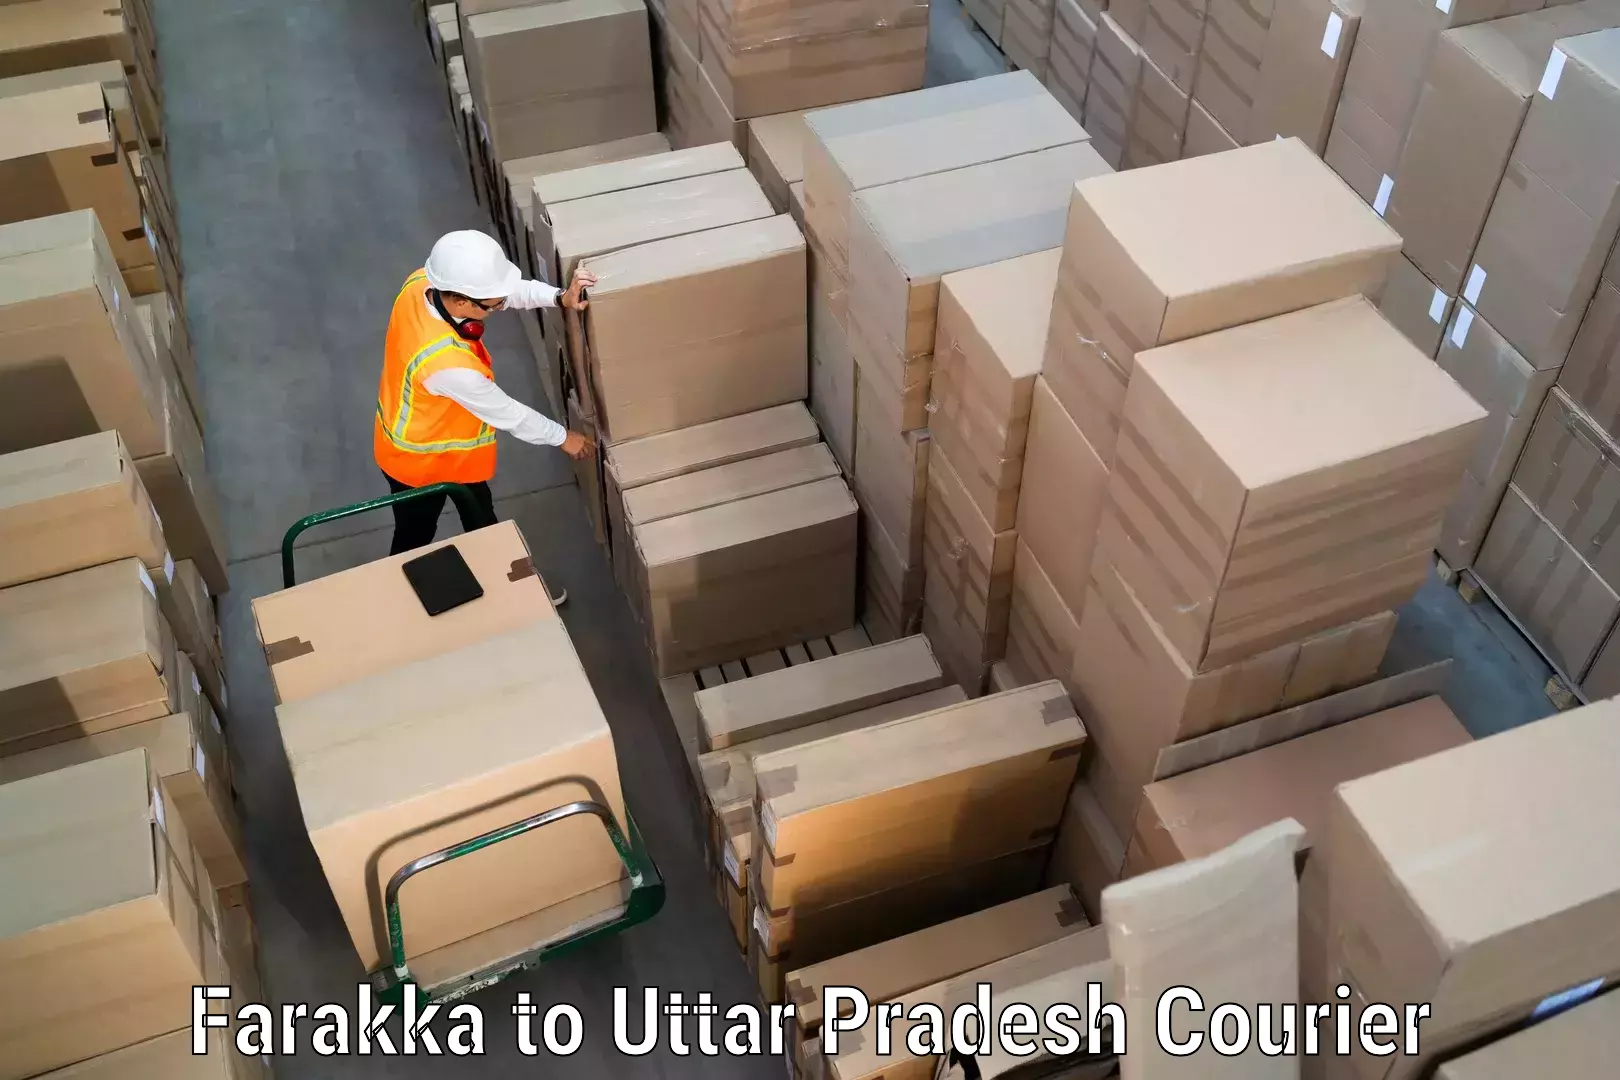 Express mail solutions in Farakka to Uttar Pradesh